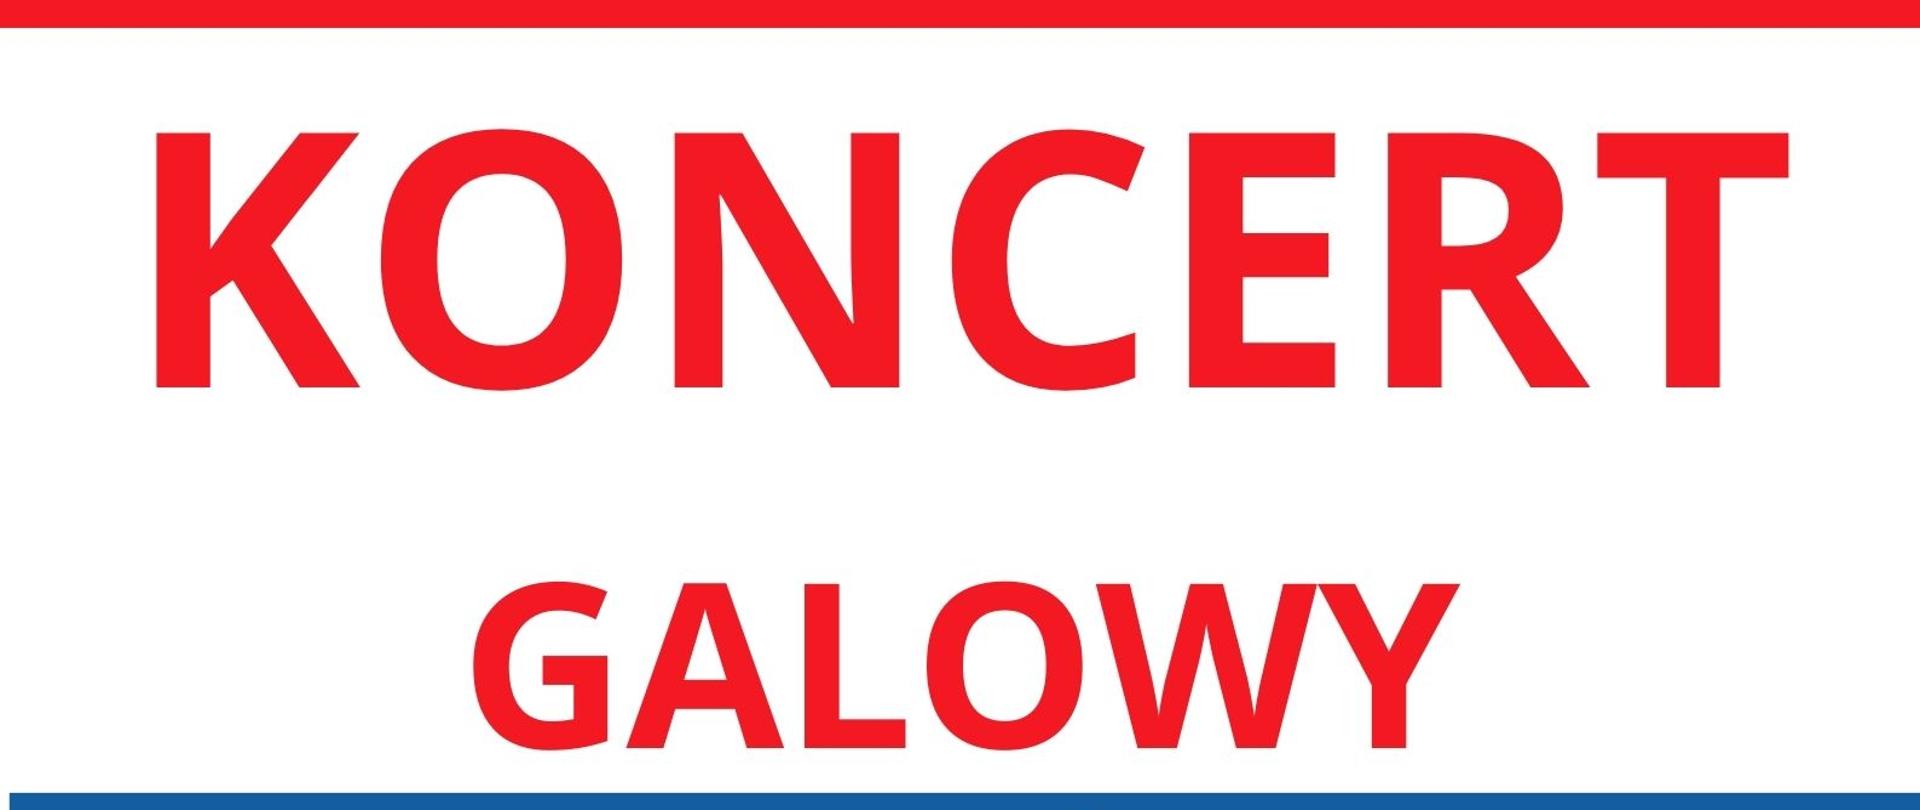 Plakat białe tło, czerwony duży napis koncert galowy, poniżej niebieski pas z białymi literami, wymienieni artyści którzy wystąpią na koncercie , duży cyfra 2 marca 2024